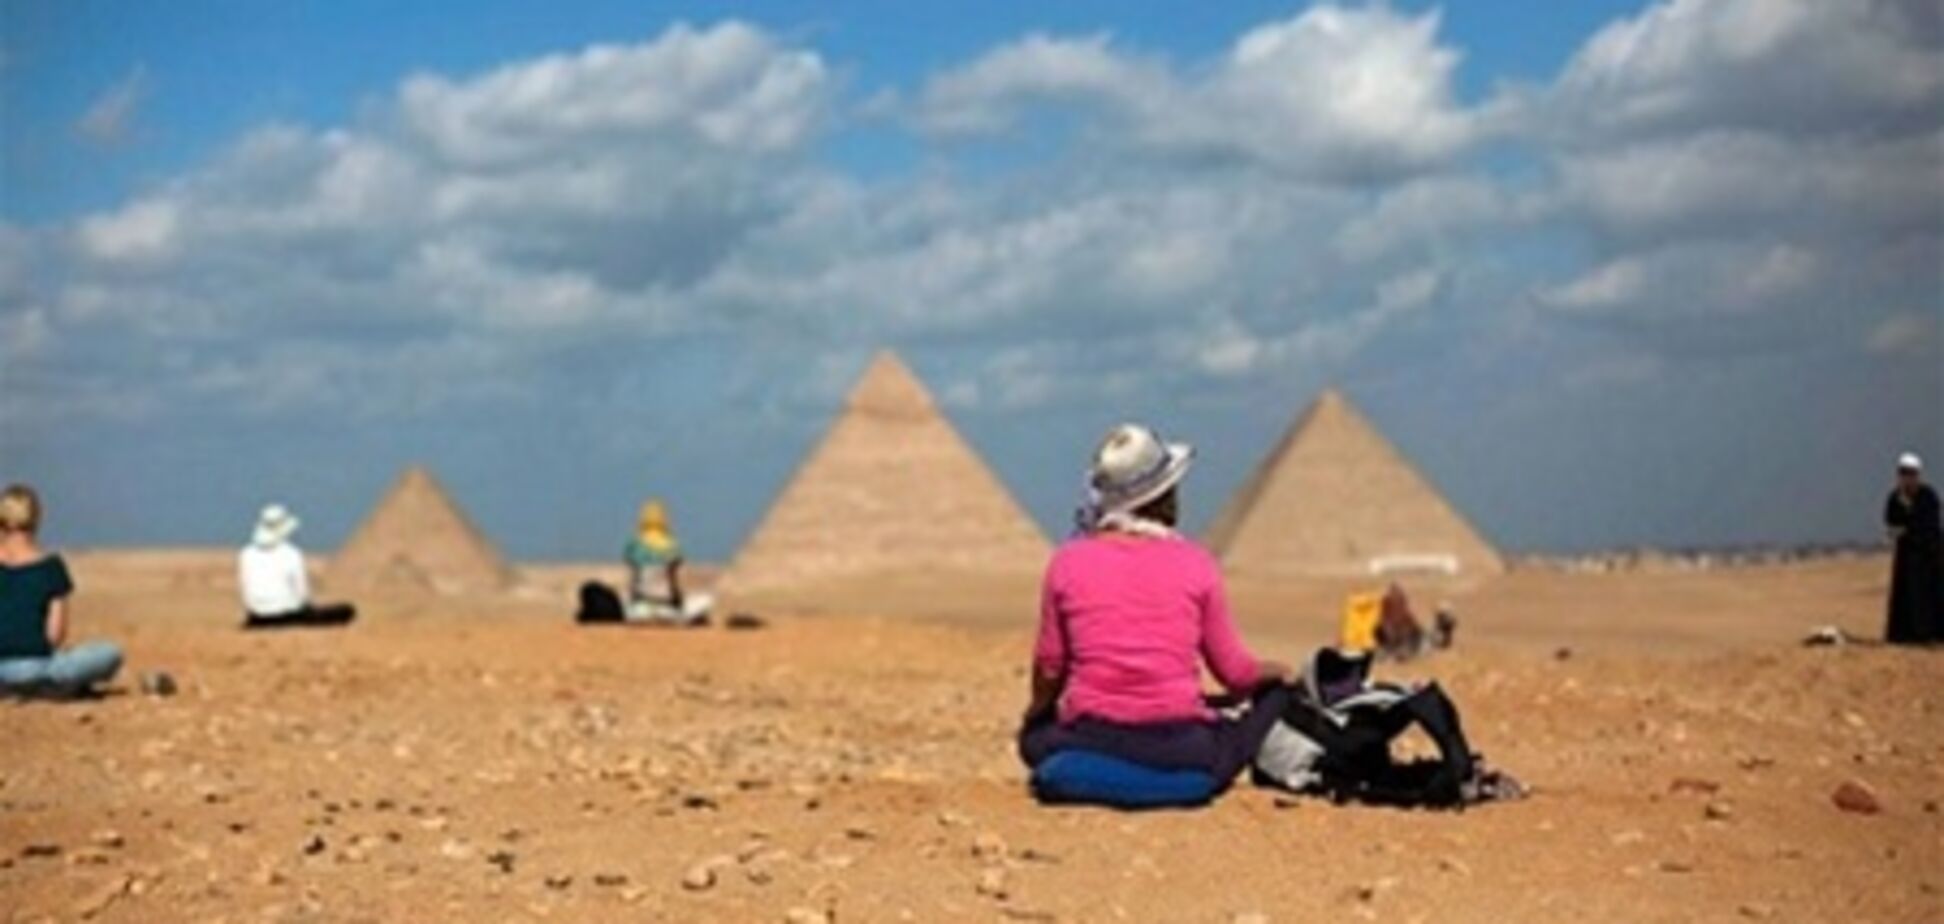 В Египете наблюдается 20% рост числа туристов, несмотря на отсутствие безопасности